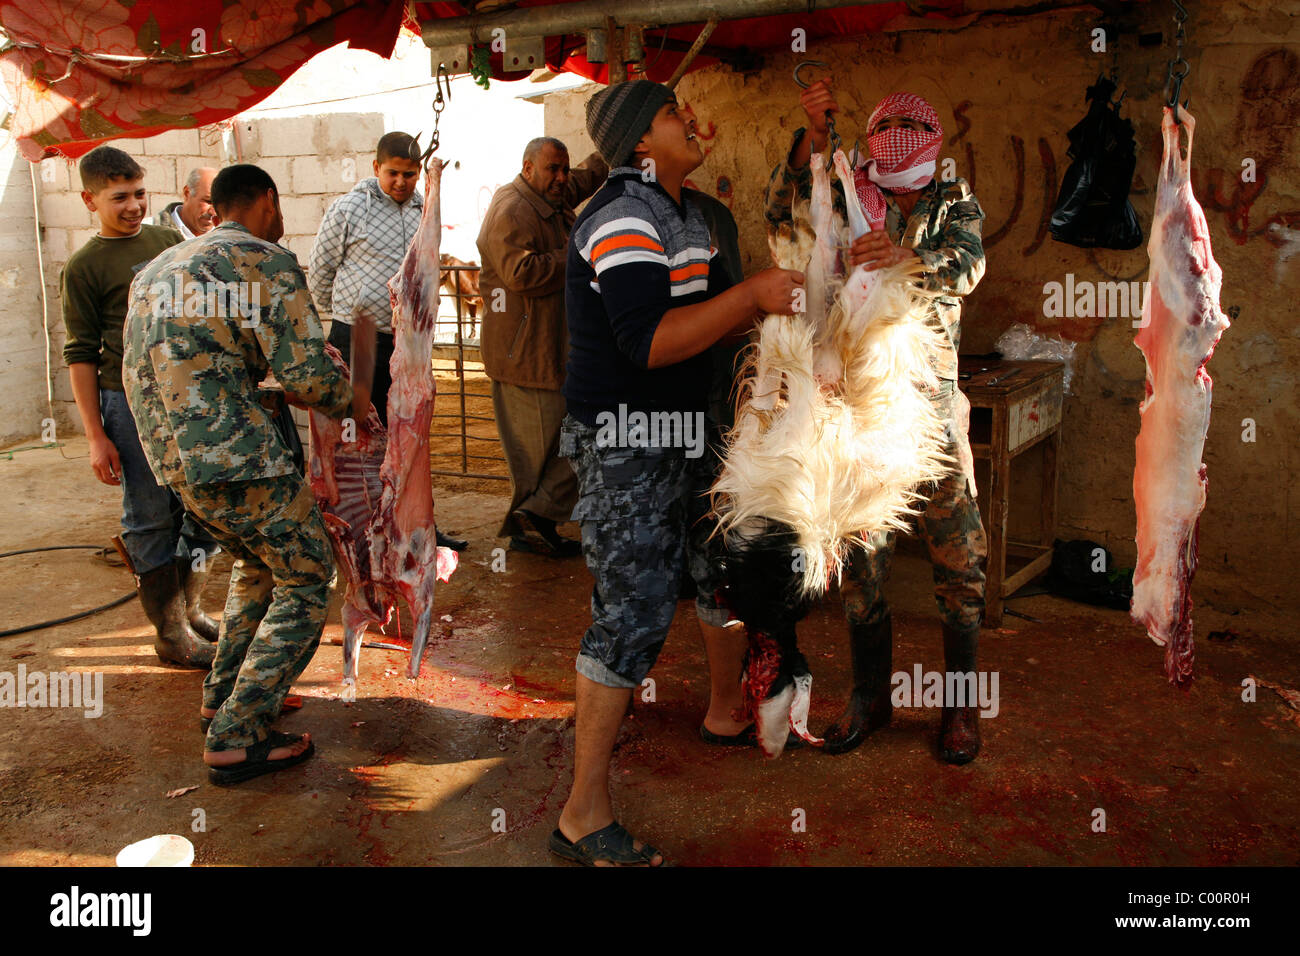 Schlachten von Ziegen für den Eid feiern, Jordanien. Stockfoto